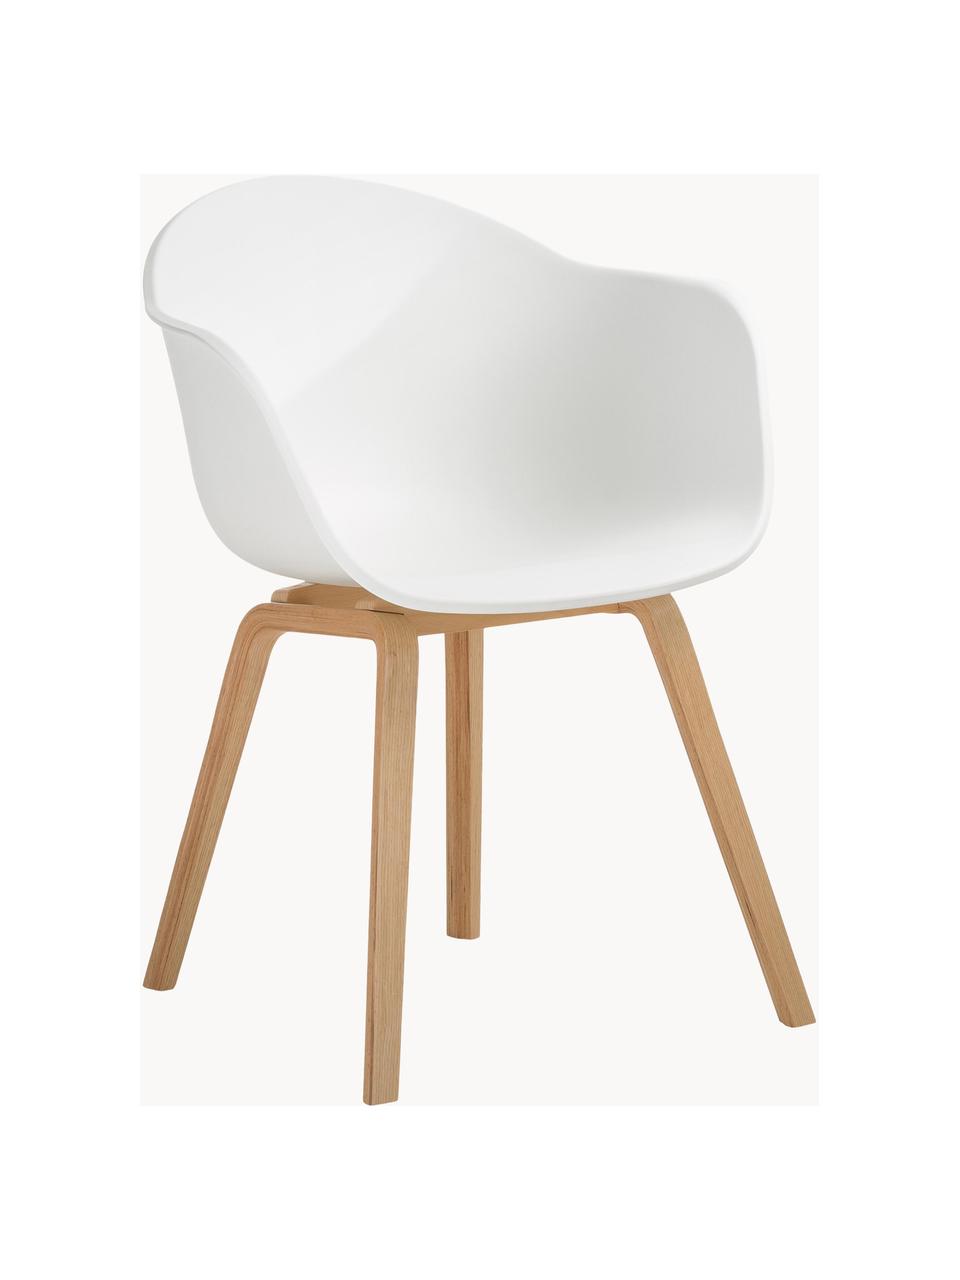 Krzesło z podłokietnikami z tworzywa sztucznego Claire, Nogi: drewno bukowe, Biały, drewno bukowe, S 60 x G 54 cm